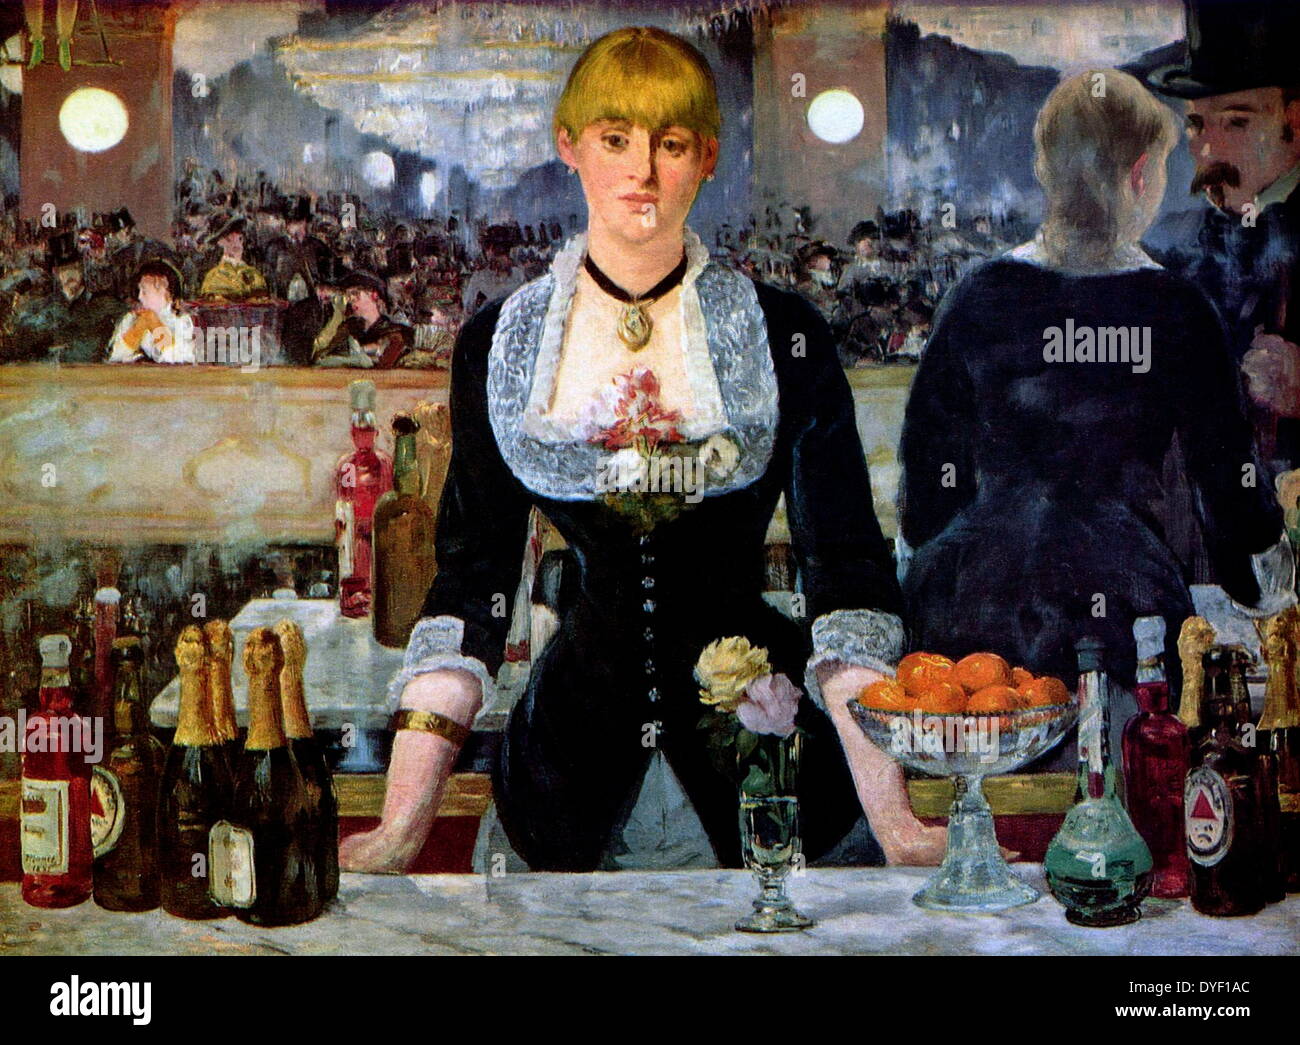 Un bar aux Folies-Bergère au (en français "Un bar aux Folies Bergère'), peint et expose au Salon de Paris en 1882. Il décrit une scène dans l'Folies Bergère de nuit à Paris et fut la dernière œuvre majeure de peintre français Édouard Manet. Banque D'Images